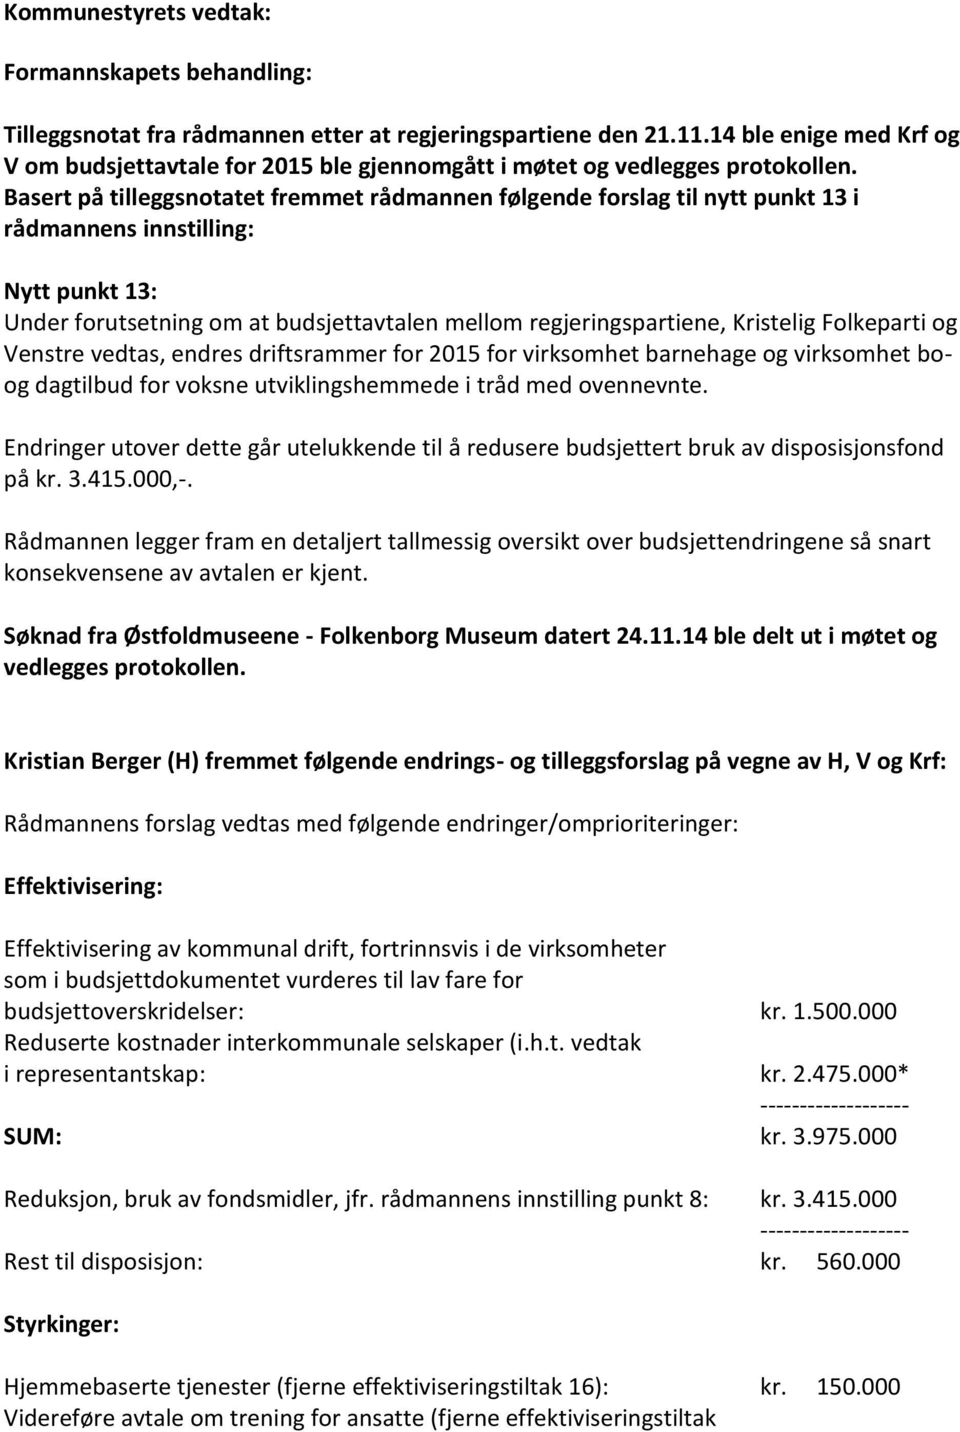 Folkeparti og Venstre vedtas, endres driftsrammer for 2015 for virksomhet barnehage og virksomhet boog dagtilbud for voksne utviklingshemmede i tråd med ovennevnte.